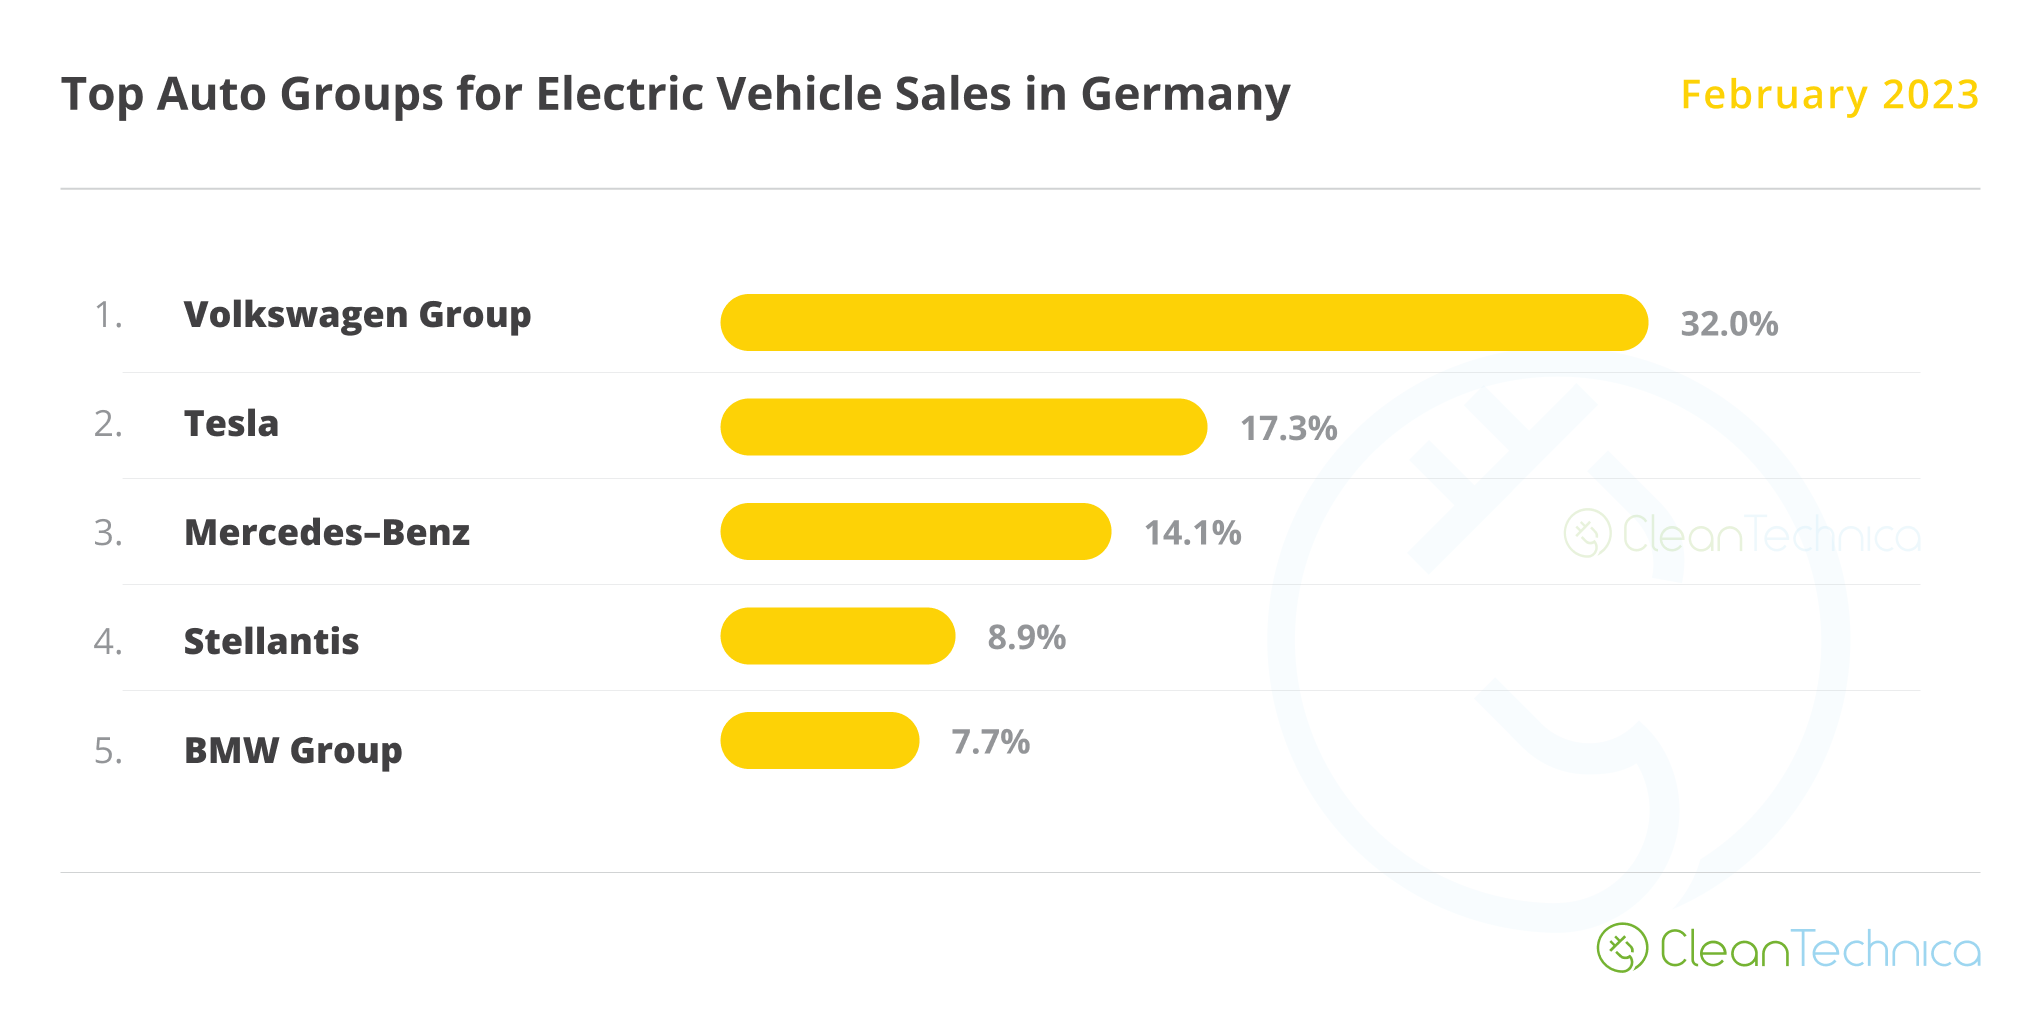 קבוצות רכב שמוכרות את רוב כלי הרכב החשמליים בגרמניה